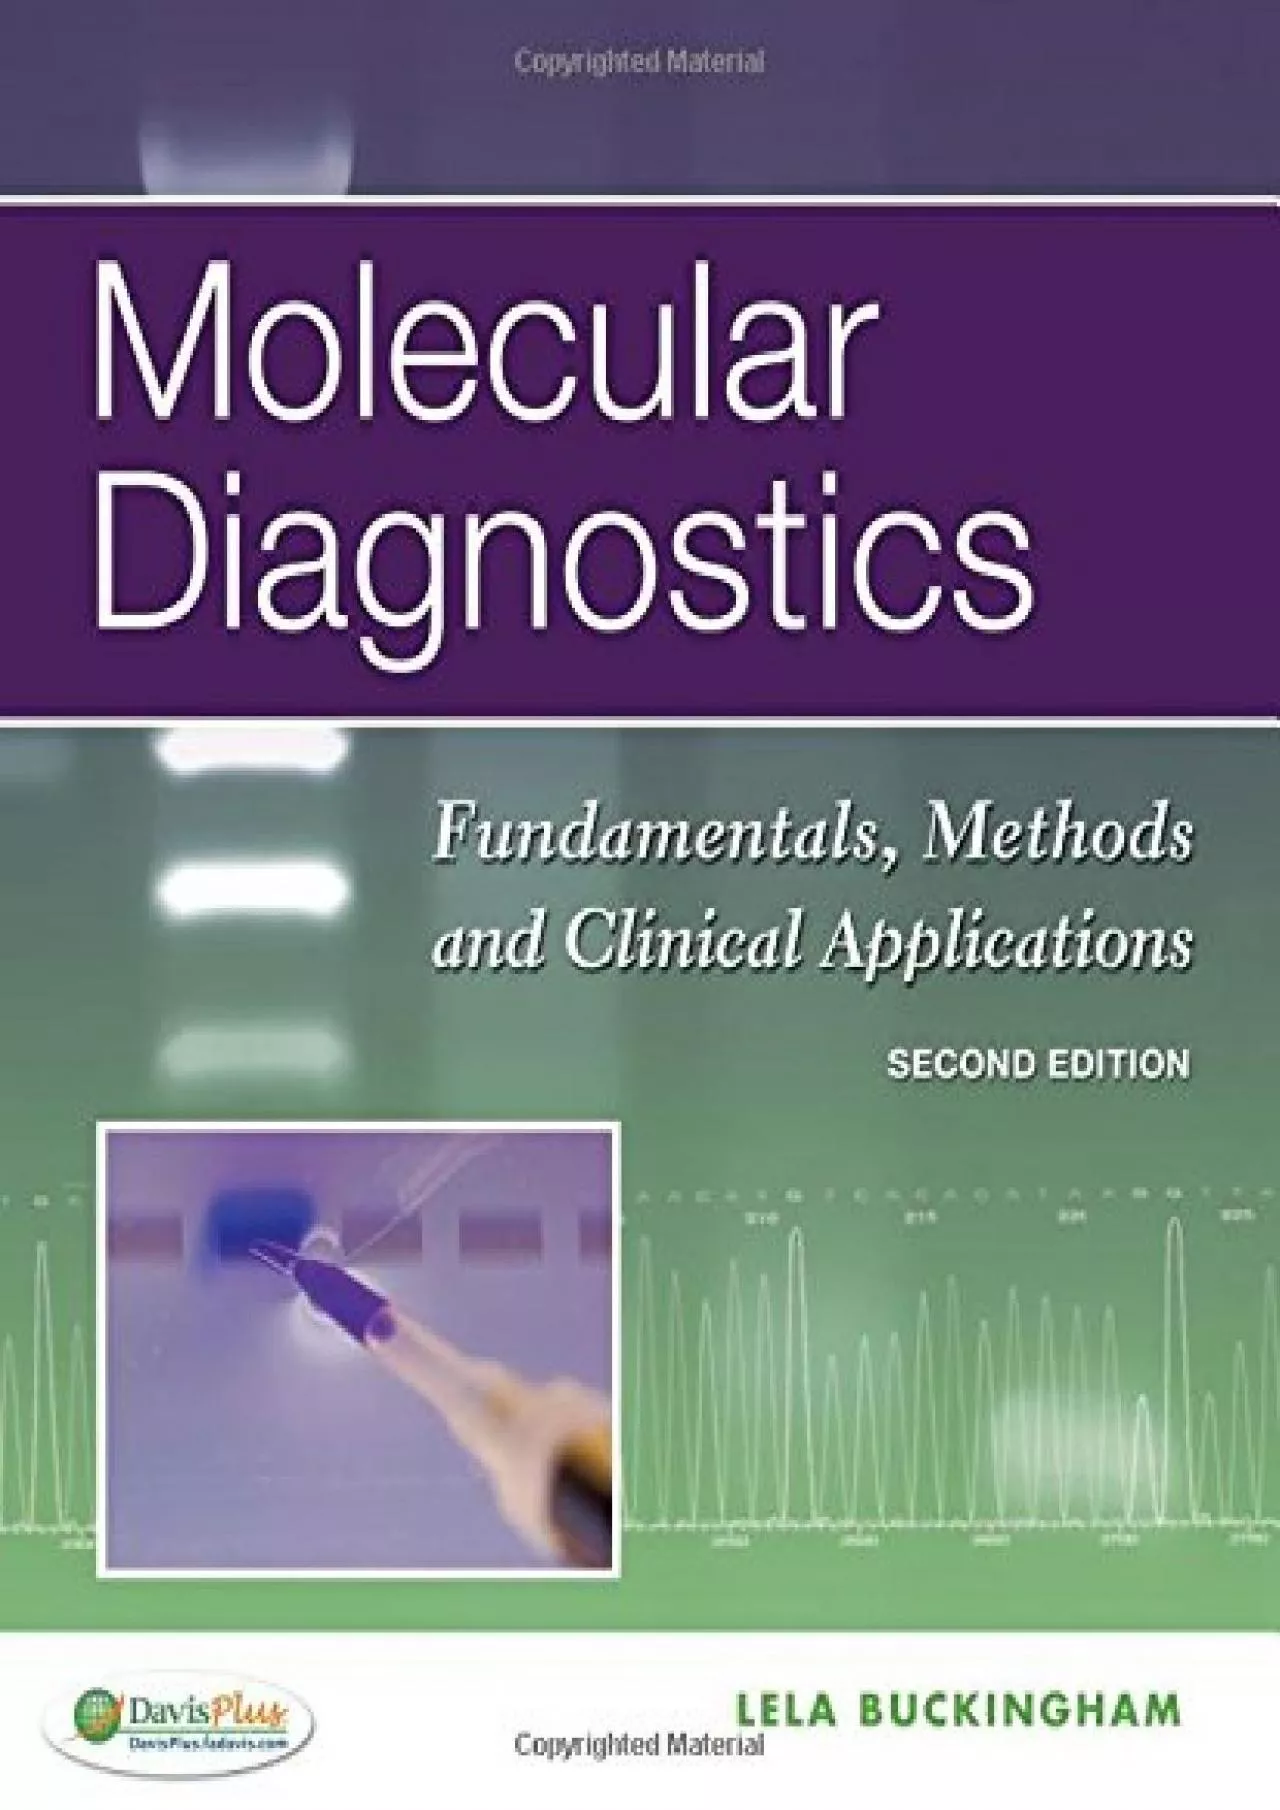 (DOWNLOAD)-Molecular Diagnostics: Fundamentals, Methods and Clinical Applications